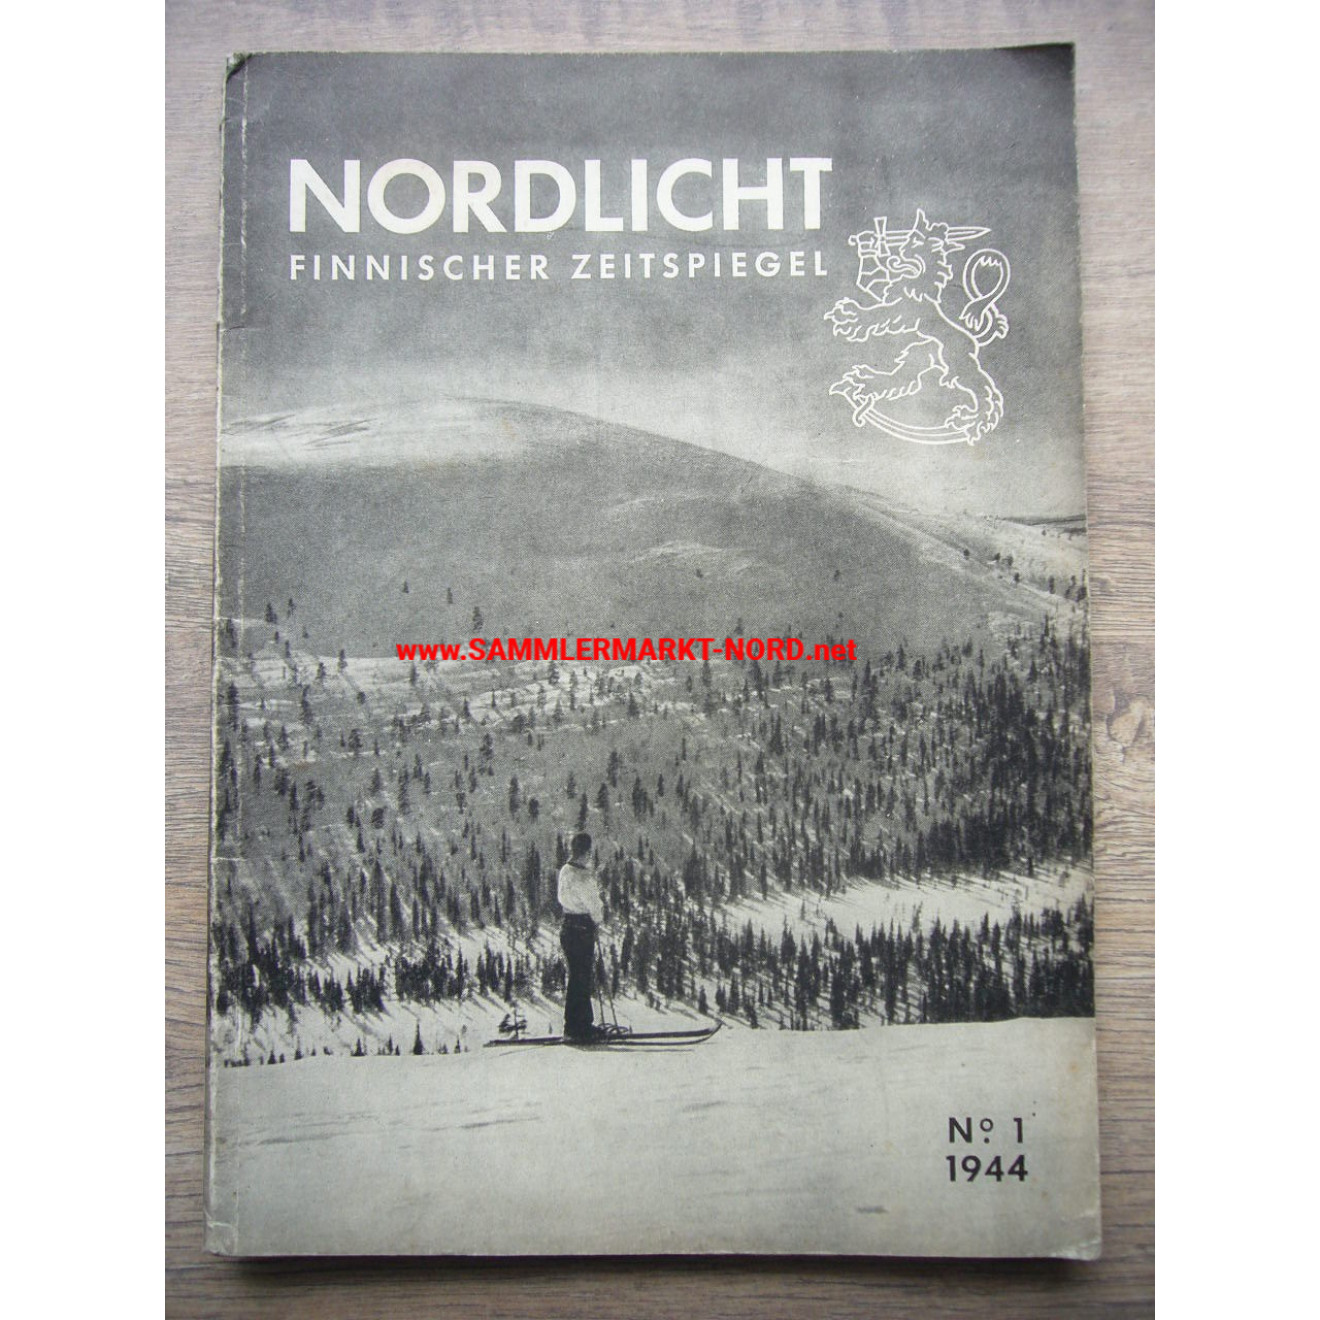 Nordlicht - Finnischer Zeitspiegel - Nr. 1 / 1944